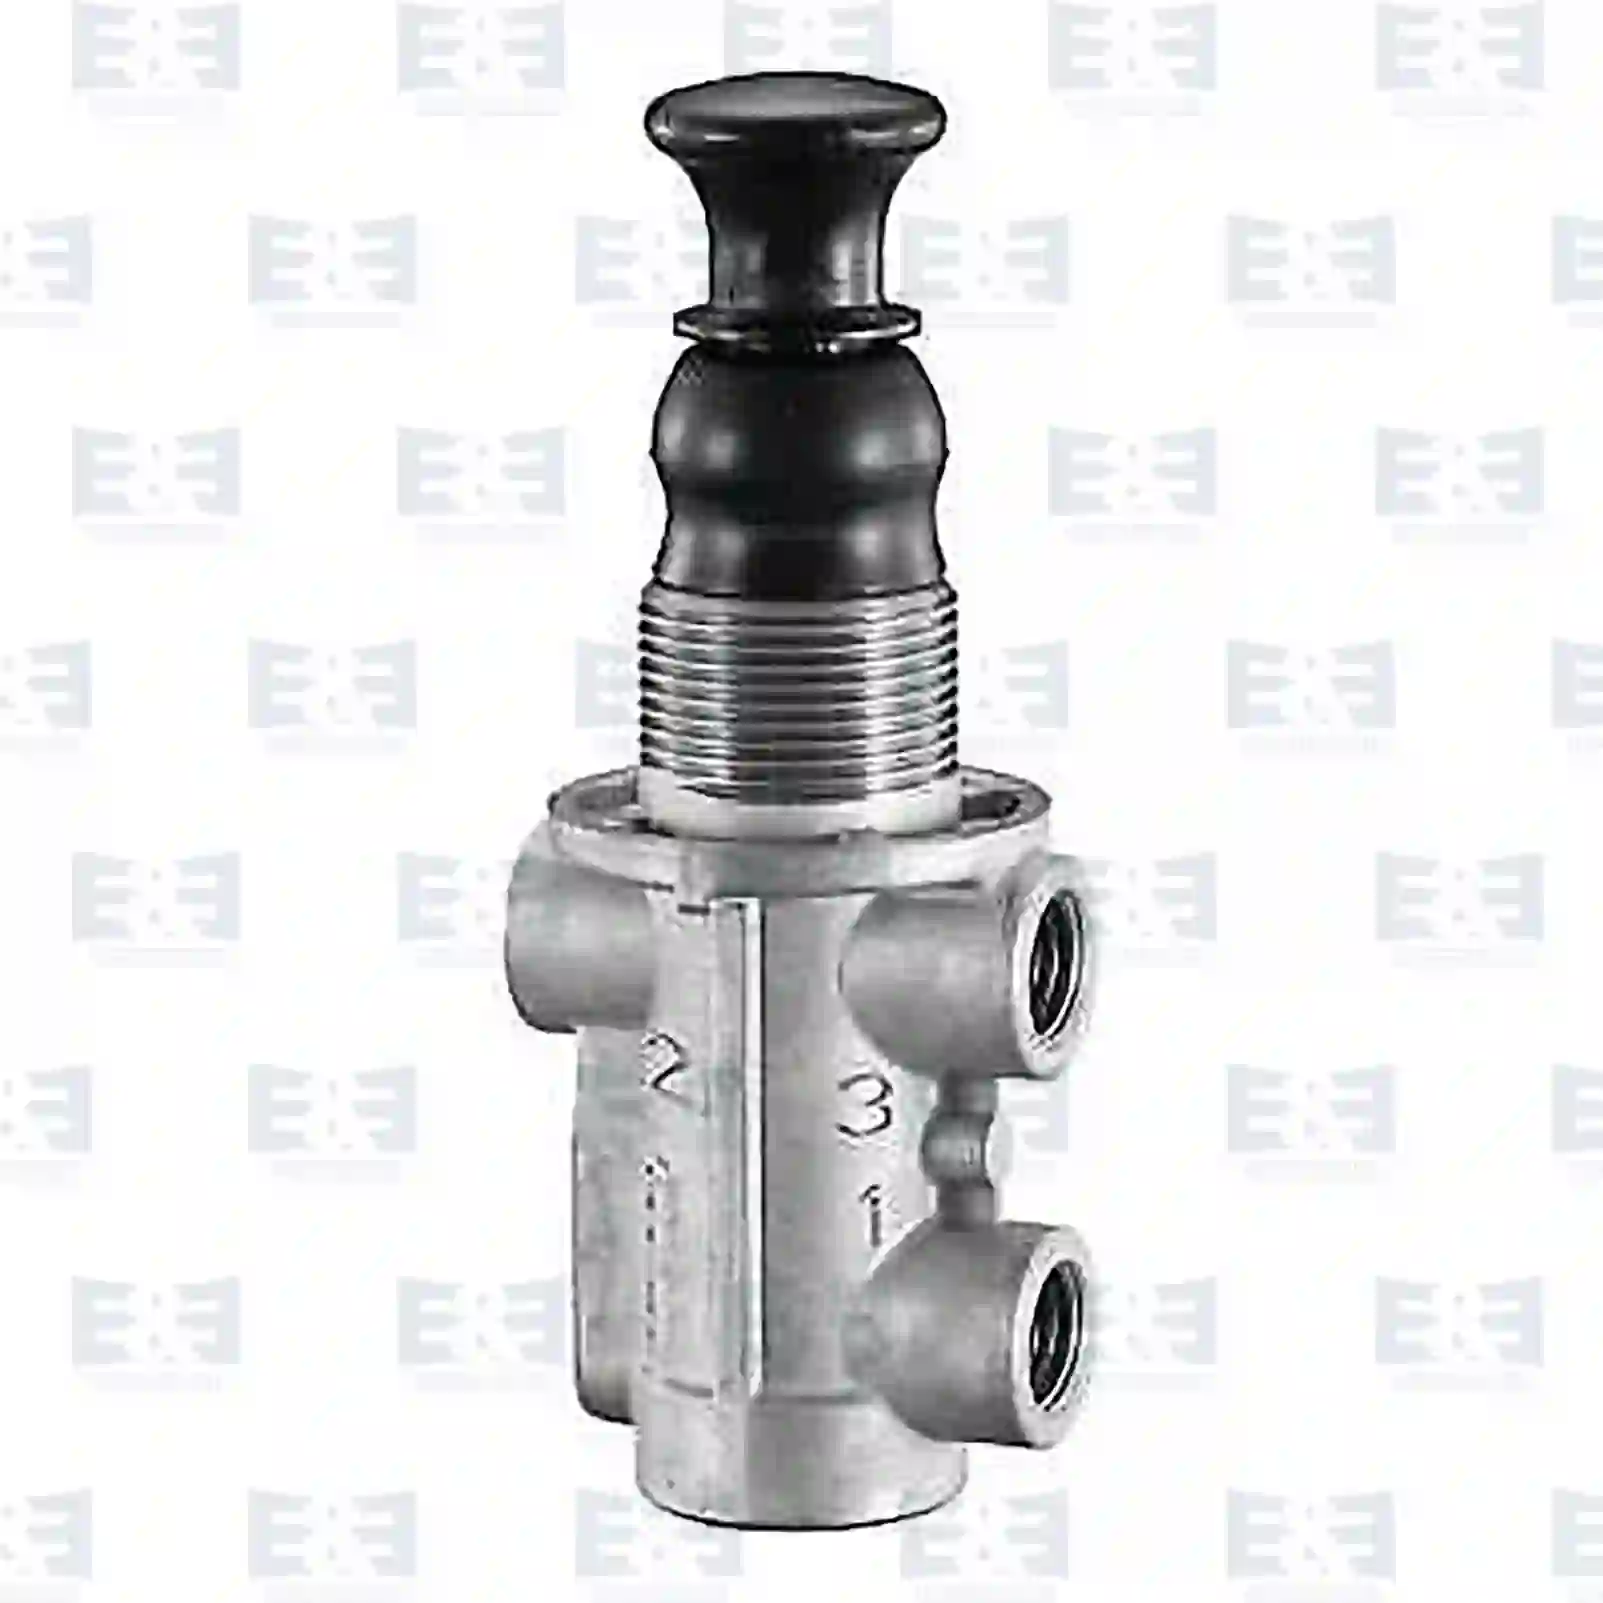  Multiway valve || E&E Truck Spare Parts | Truck Spare Parts, Auotomotive Spare Parts